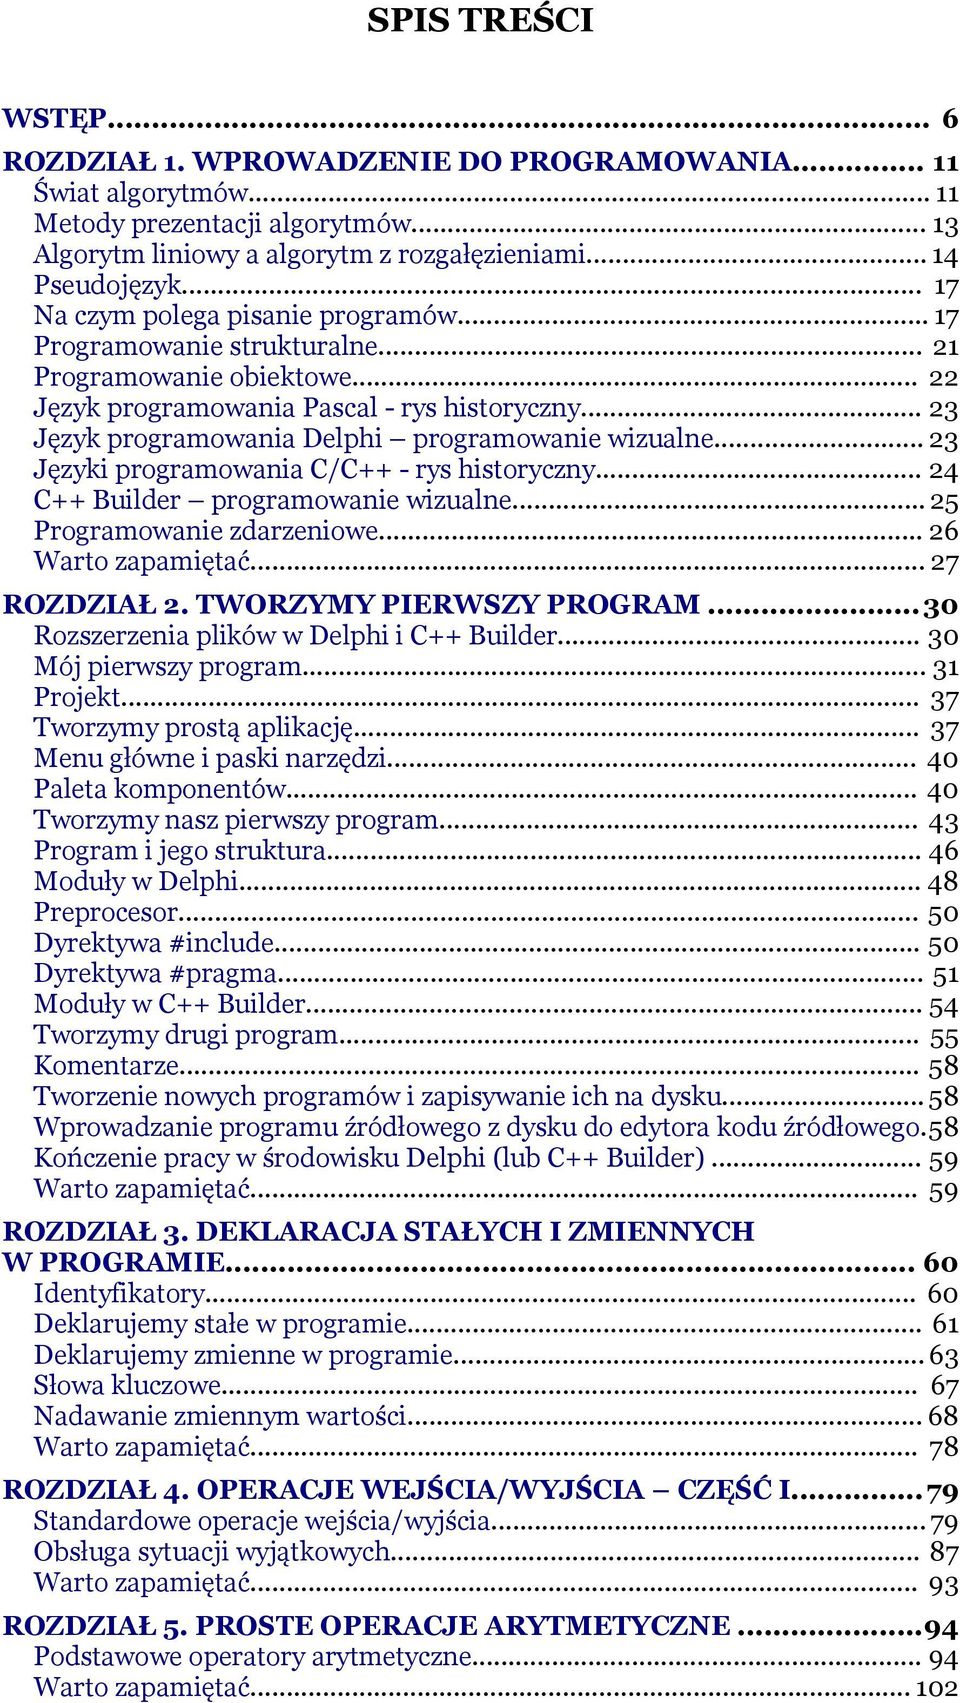 .. 23 Język programowania Delphi programowanie wizualne... 23 Języki programowania C/C++ - rys historyczny... 24 C++ Builder programowanie wizualne... 25 Programowanie zdarzeniowe.